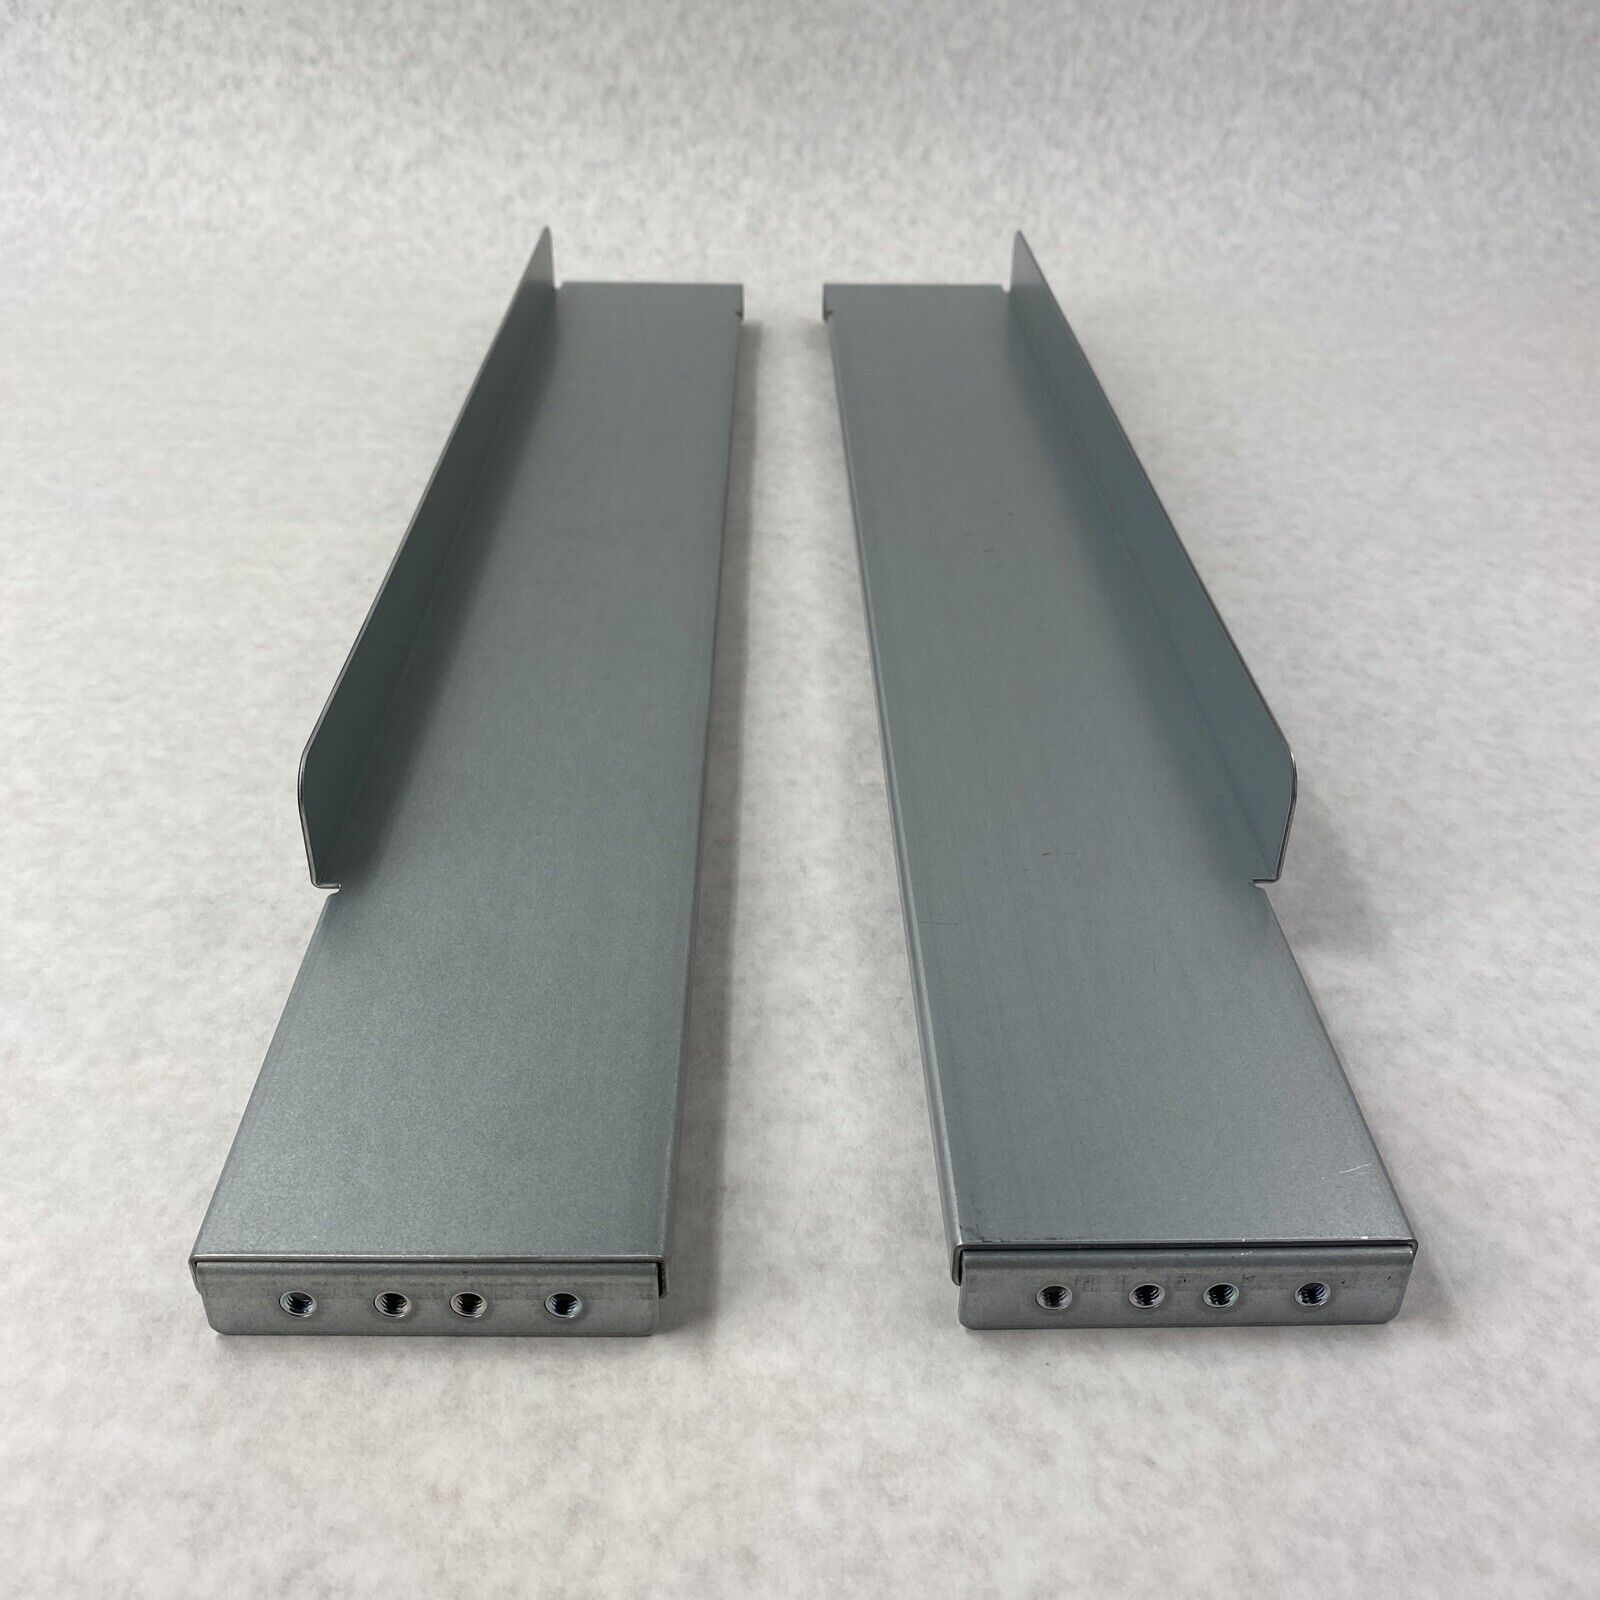 Emerson 19" Mounting Rack Slide Rail Kit for GXT5 UPS